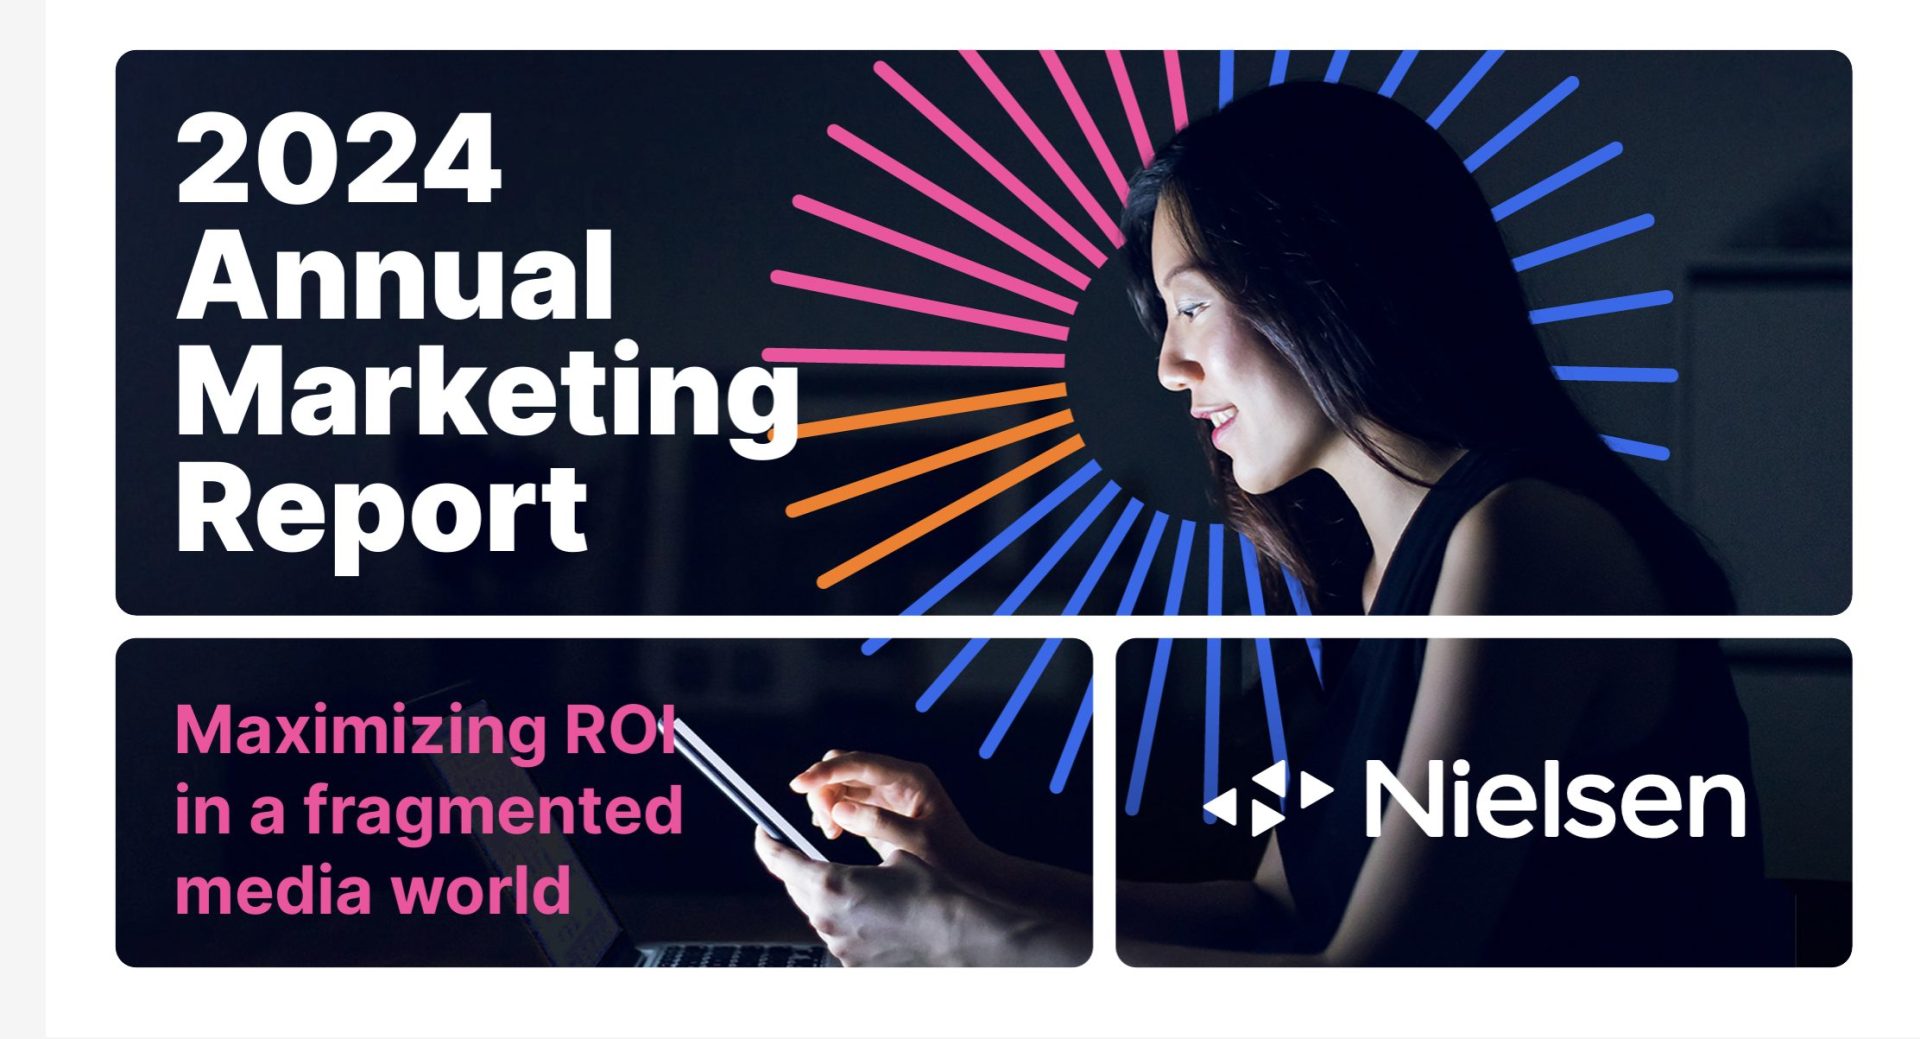 Rapporto Nielsen 2024 global marketing: sempre più attenzione sul digital e performance marketing